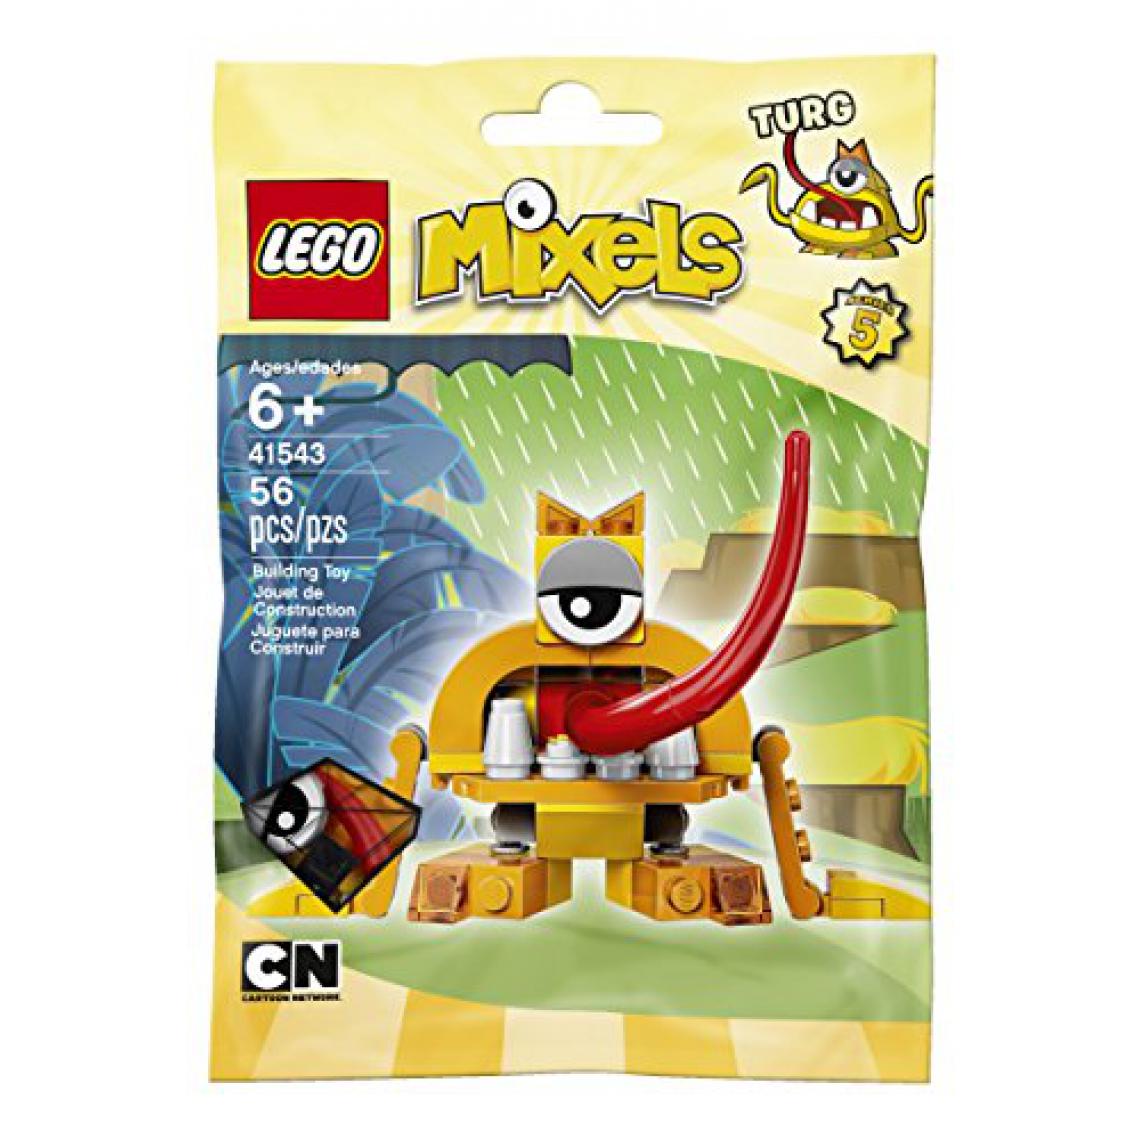 Lego - Kit de construction LEgO Mixels Turg (41543) - Briques et blocs